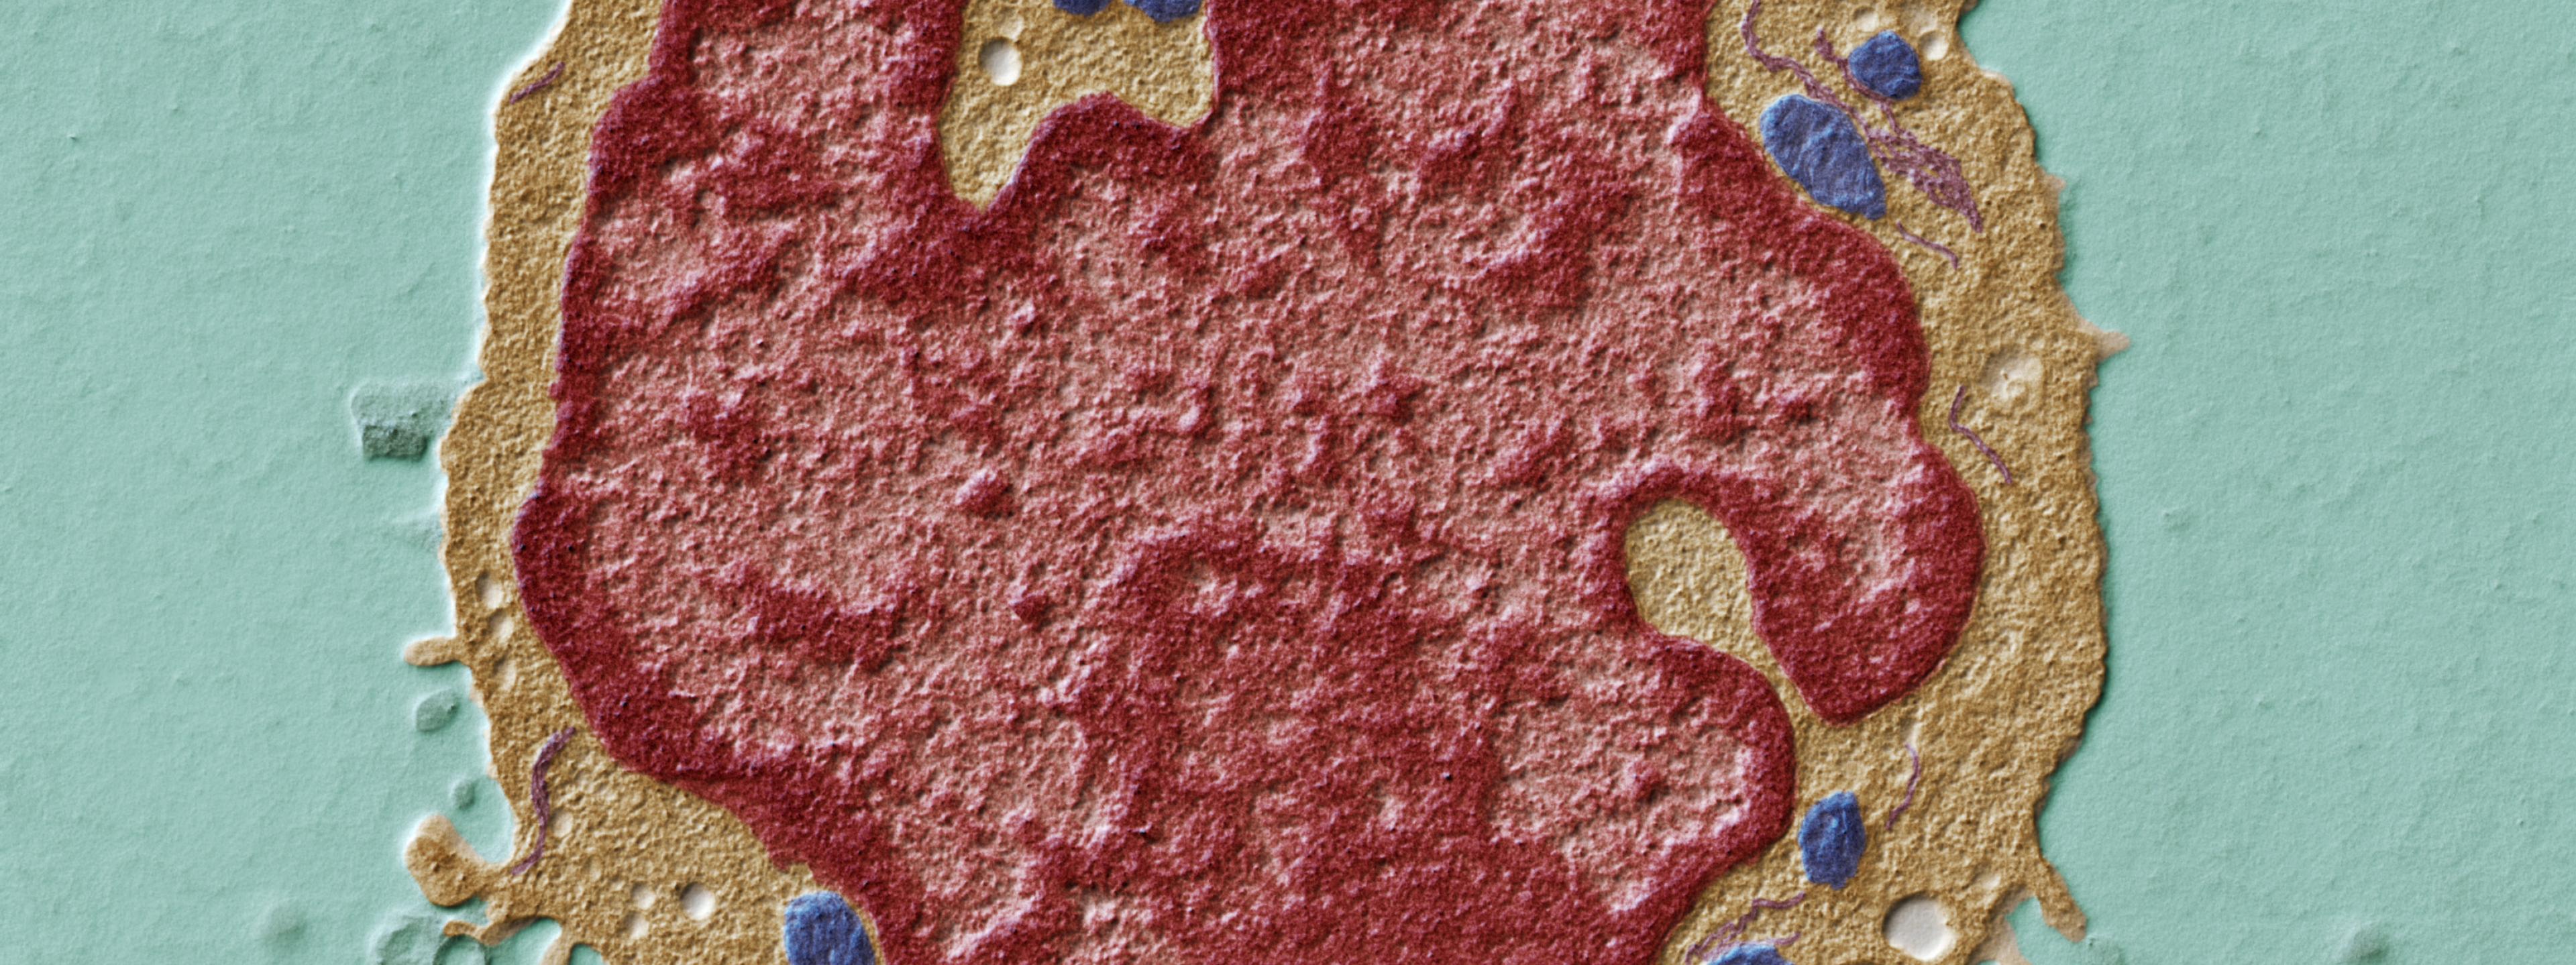 In diesem Ultradünnschnitt durch einen Lymphozyten sind deutlich die Zellbestandteile zu erkennen. Die Mitochondrien sind blau, das endoplasmatische Retikulum violett und der Zellkern rot dargestellt. Transmissions-Elektronenmikroskop, Vergrößerung 5000:1 (bei 15×12cm Bildgrösse)